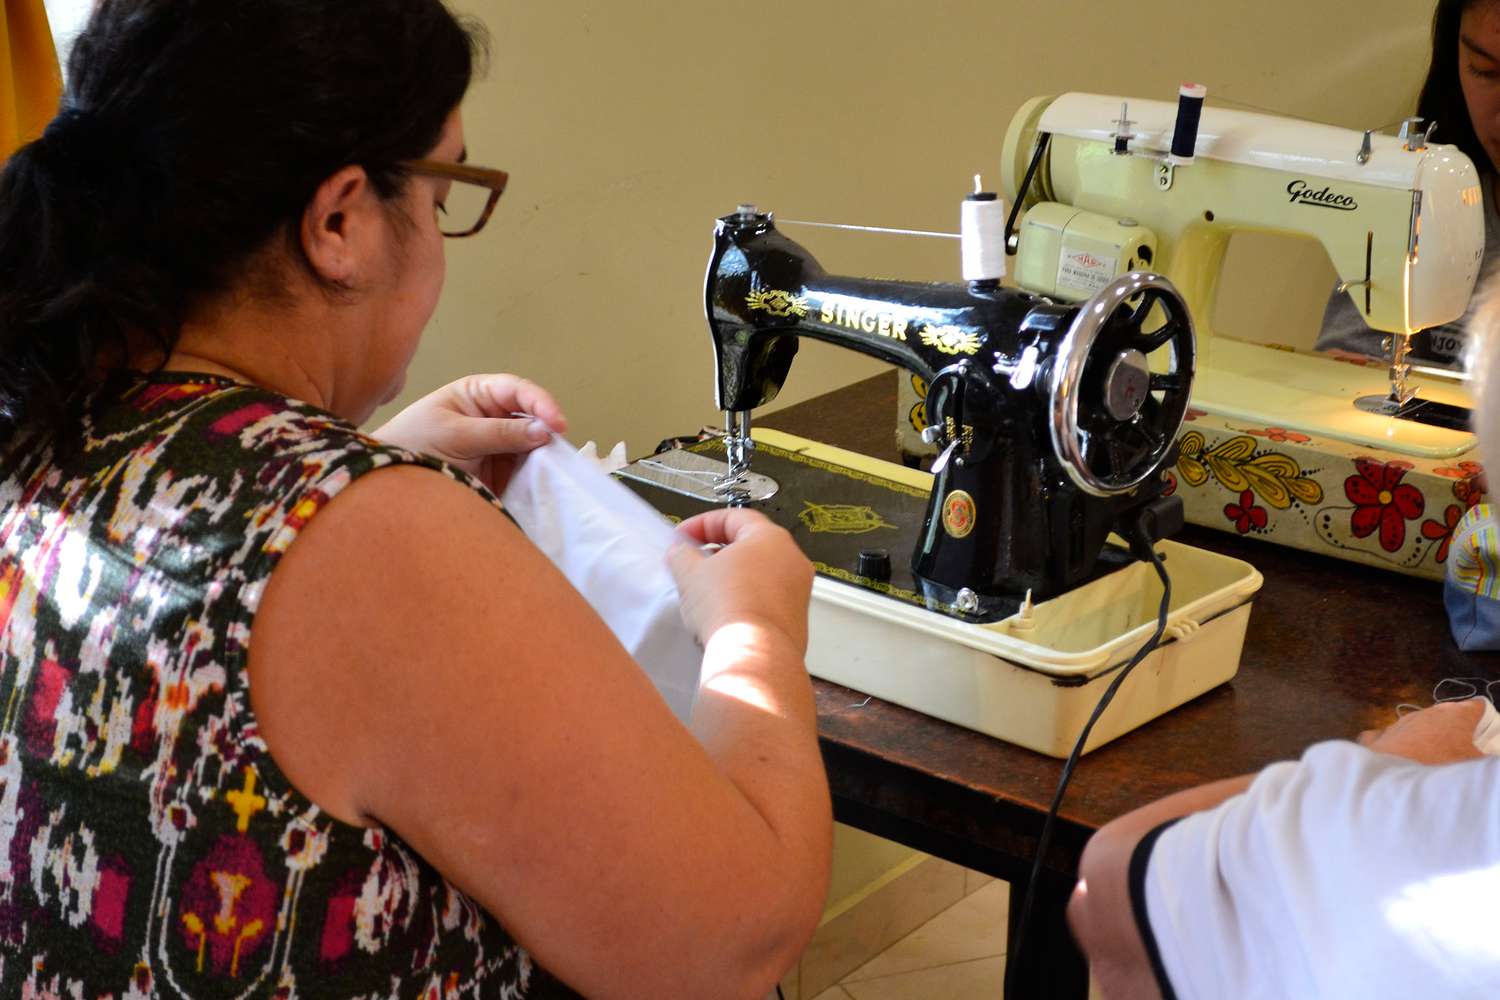 Costura: Aprender a coser y poder plasmar todo ese conocimiento en un trabajo que dignifique